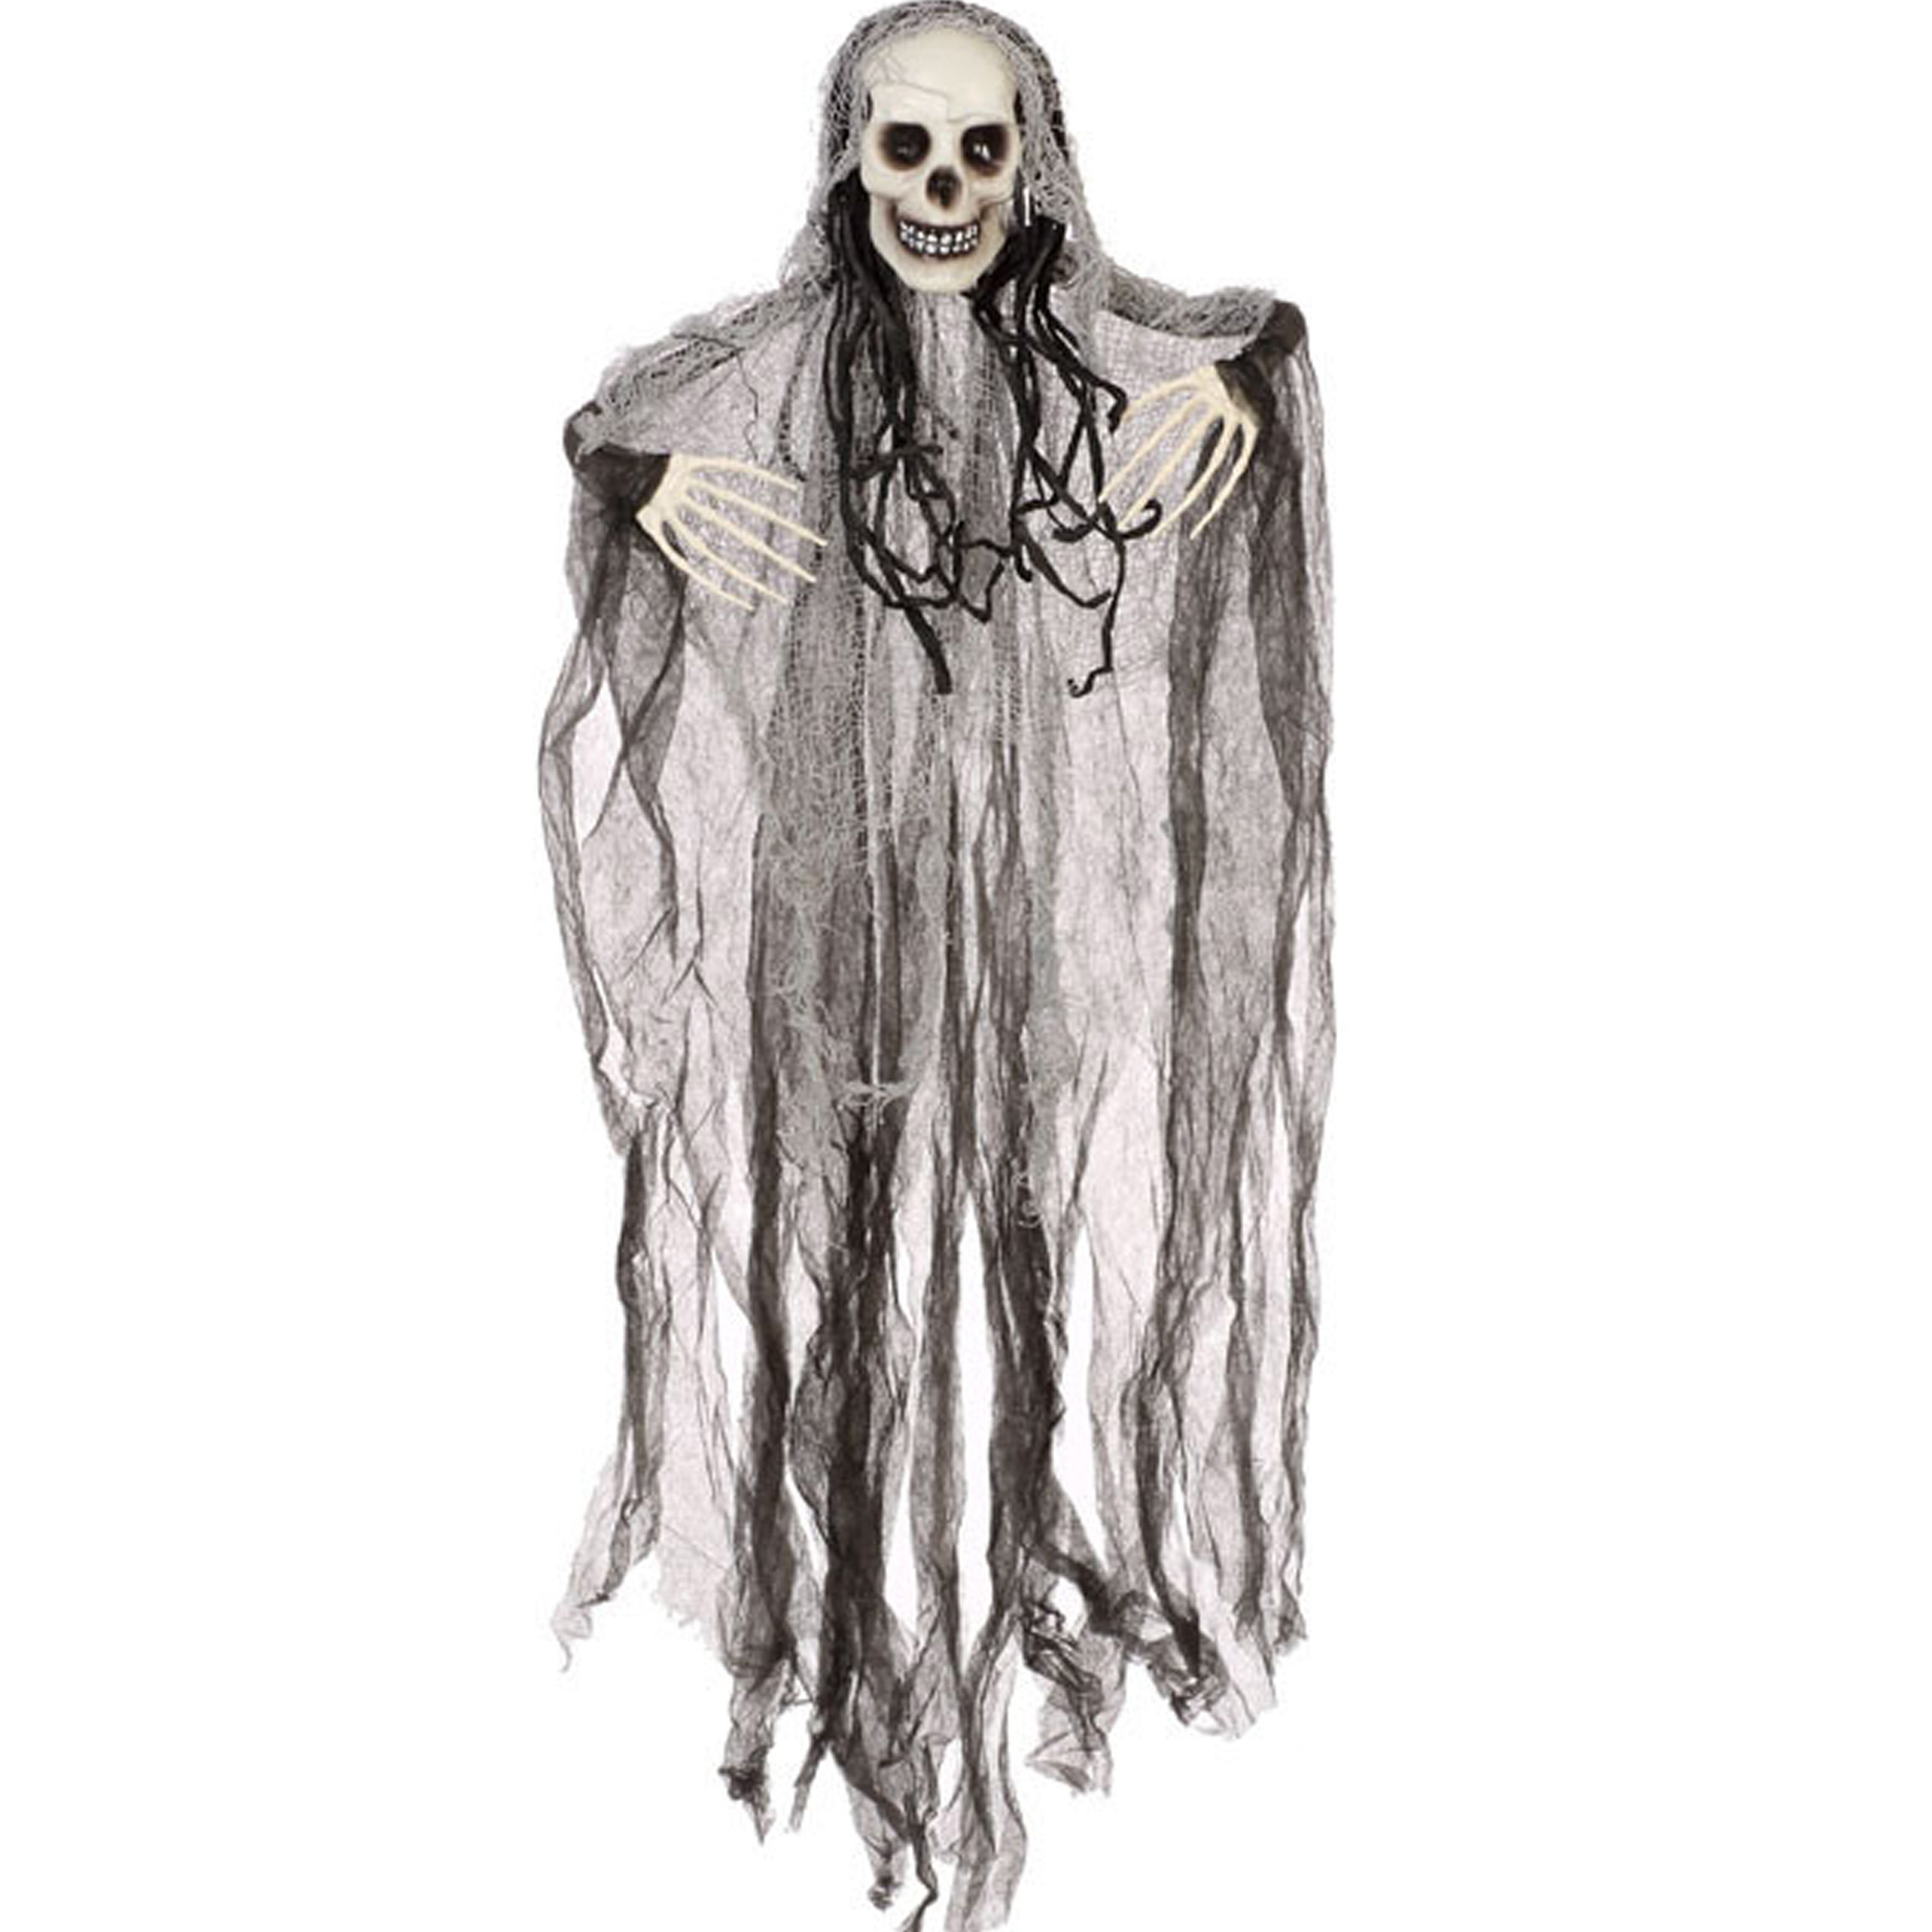 Halloween-horror thema hang decoratie spook-skelet enge-griezelige pop 91 cm